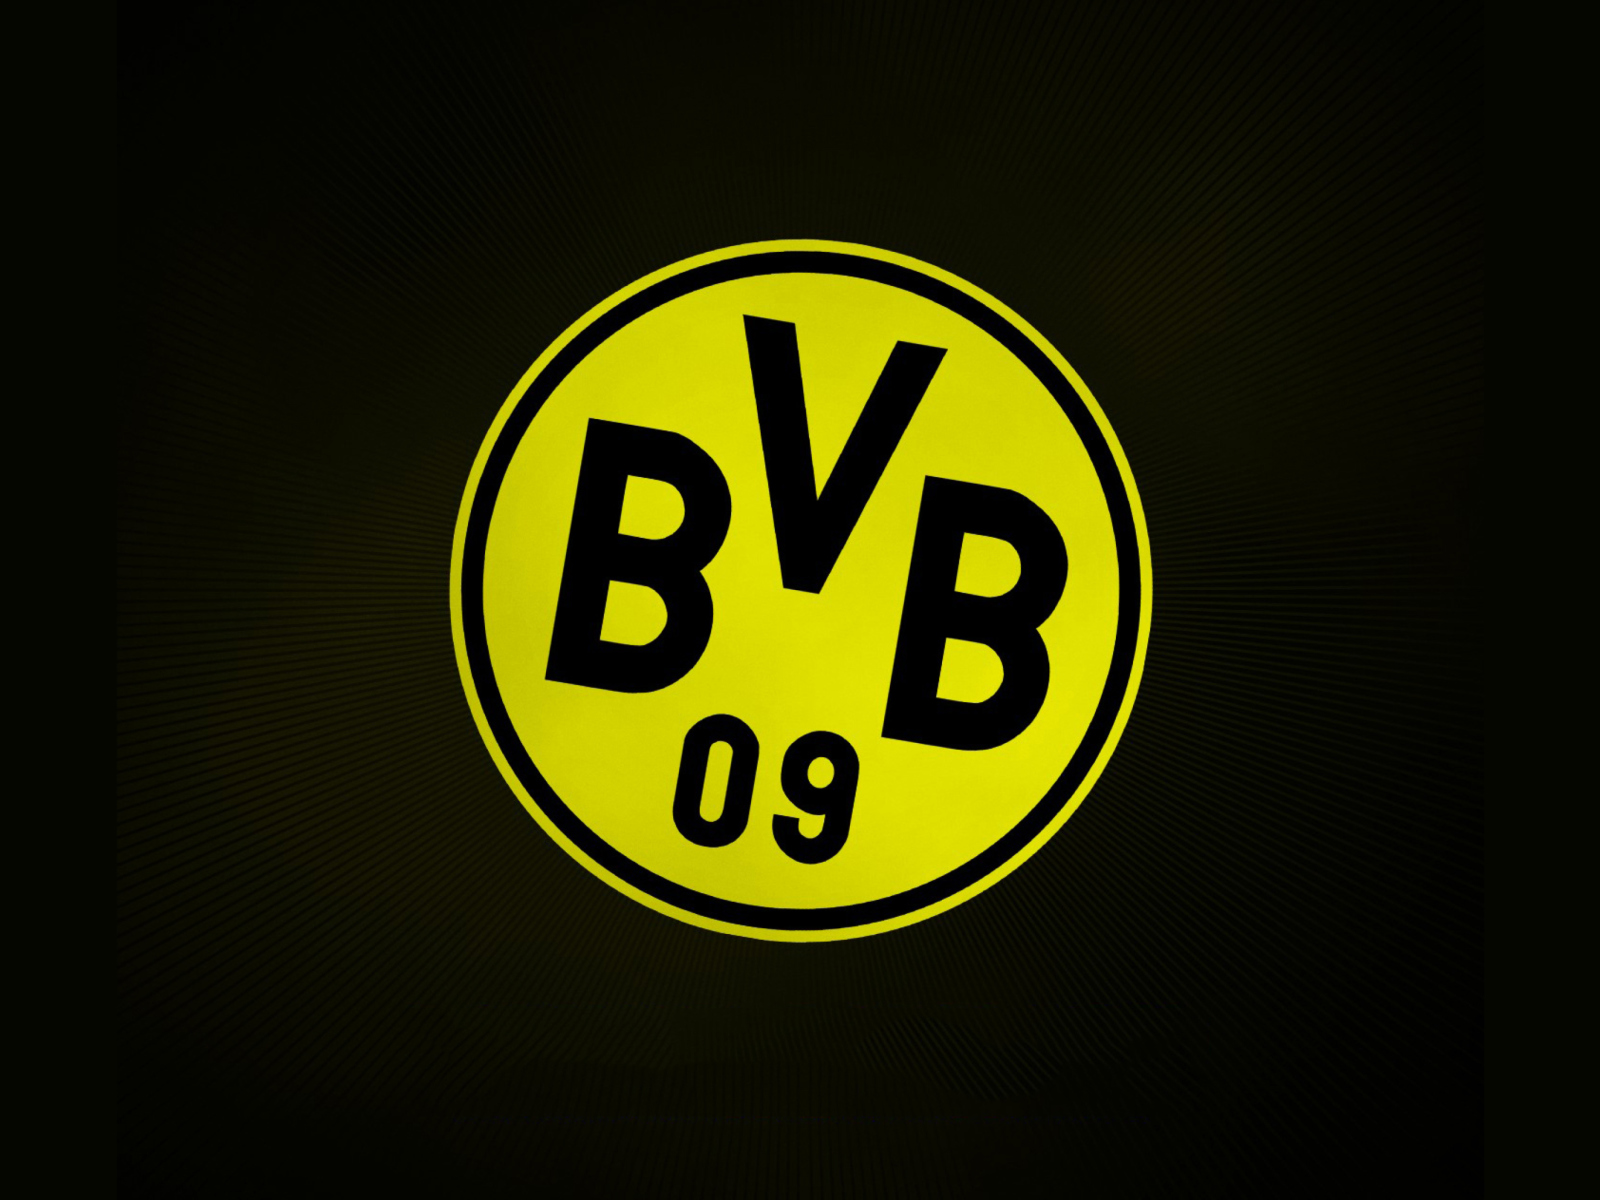 Borussia Dortmund - BVB wallpaper 1600x1200